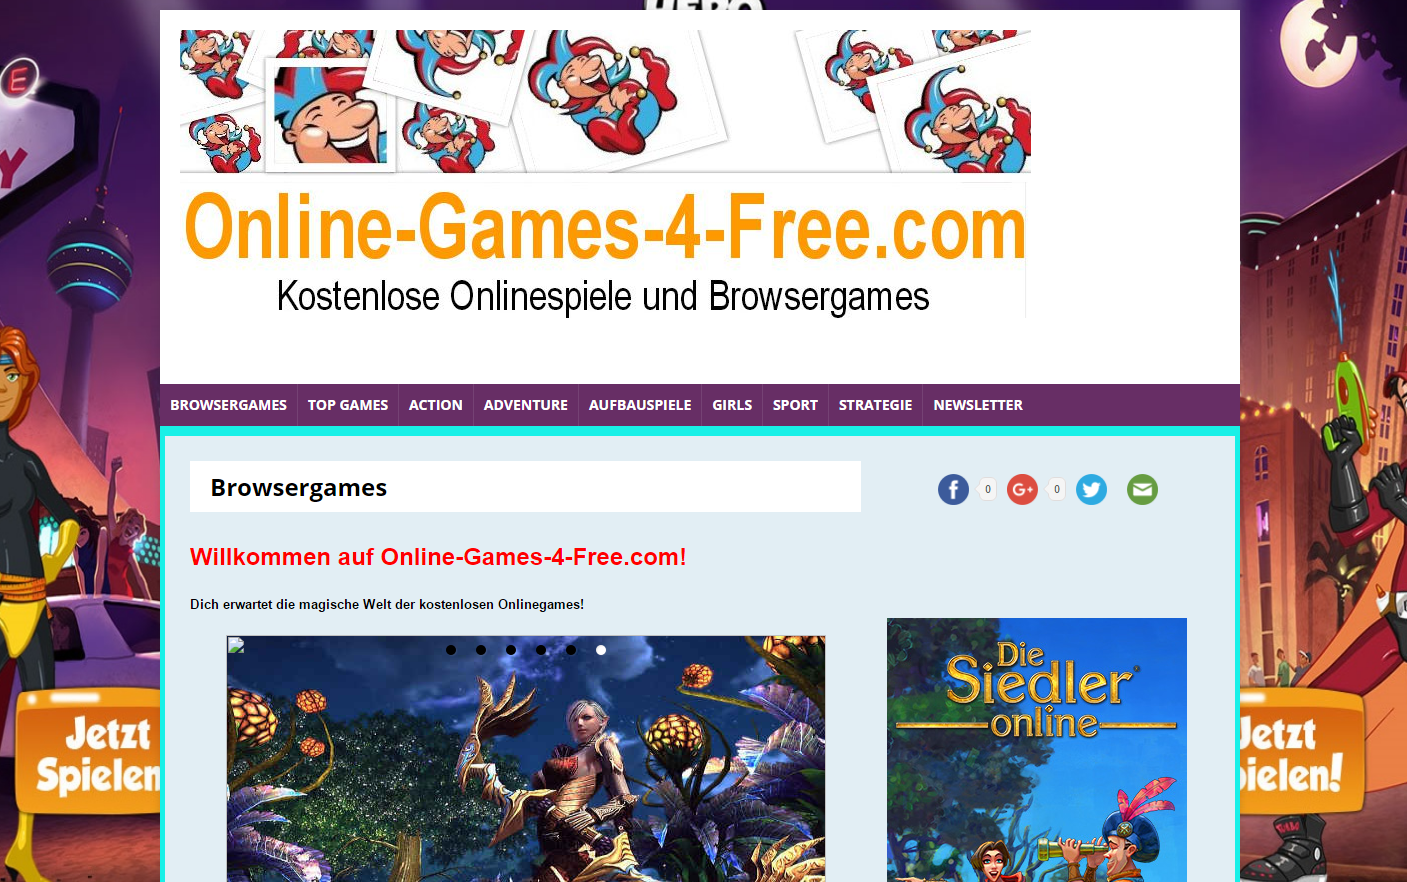 Kostenlose Onlinespiele auf online-games-4-free.com